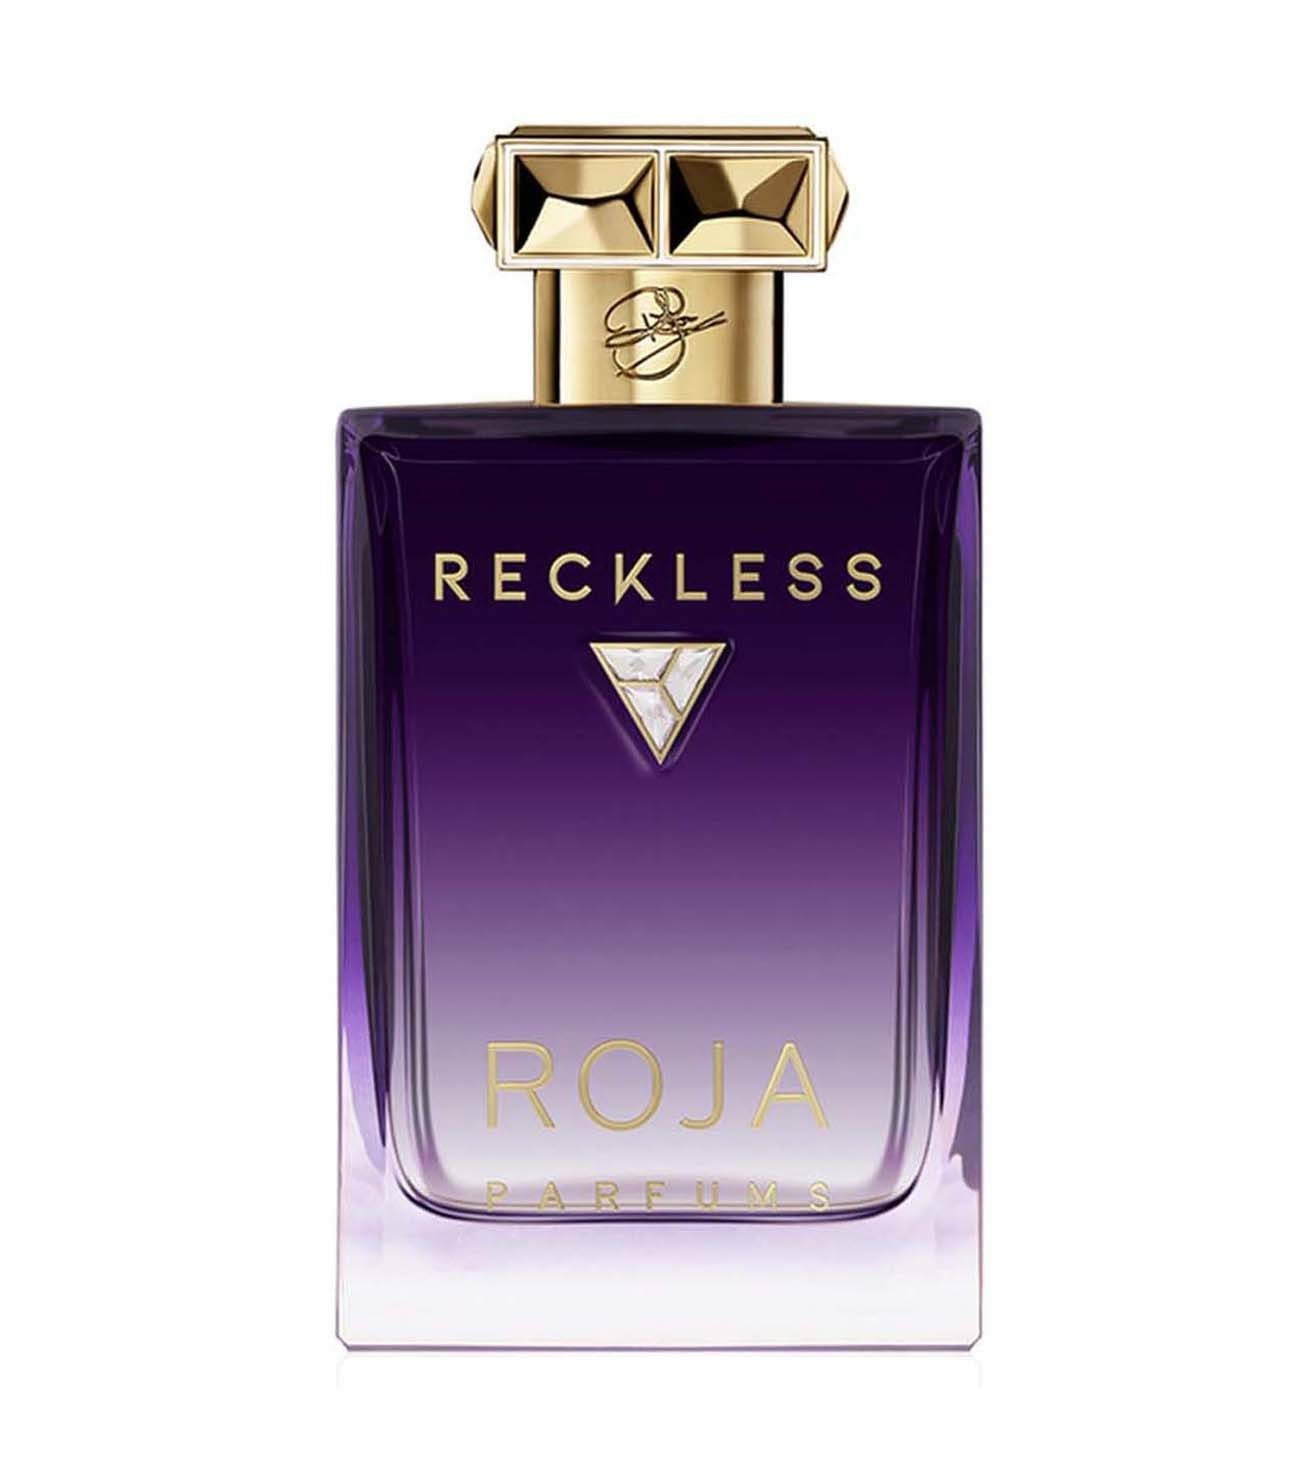 Roja - Reckless Essence de Parfum.